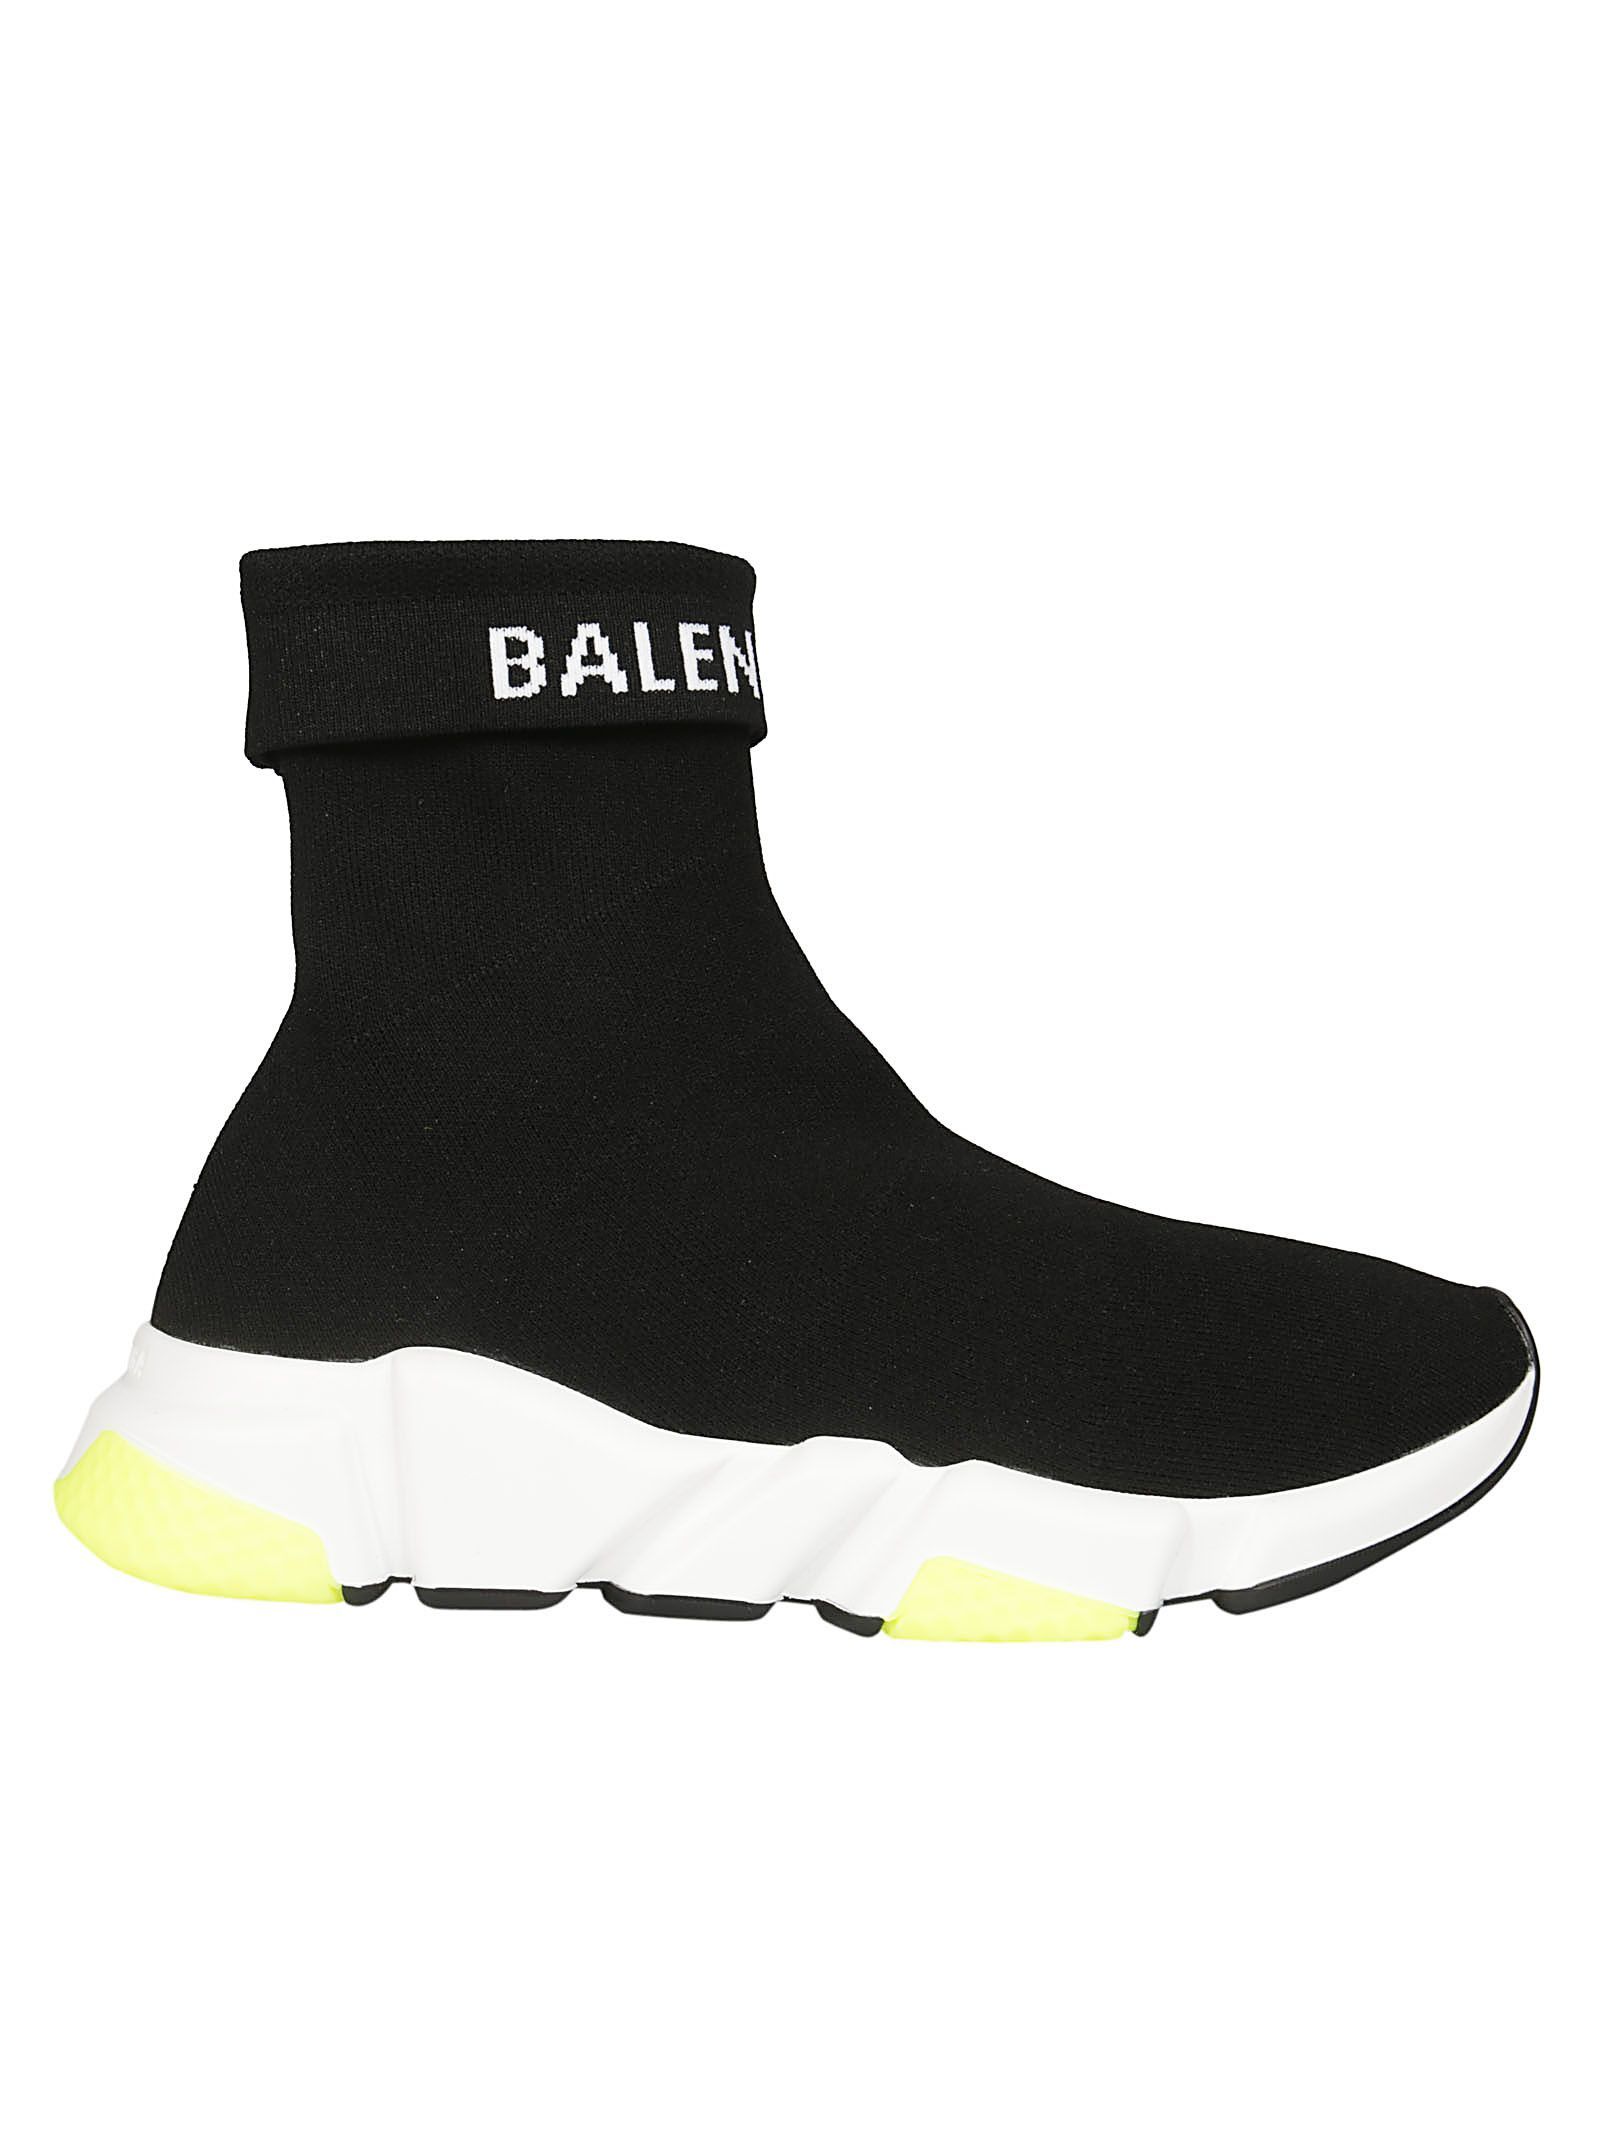 Balenciaga Speed Hi-top Sneakers | Italist.com US